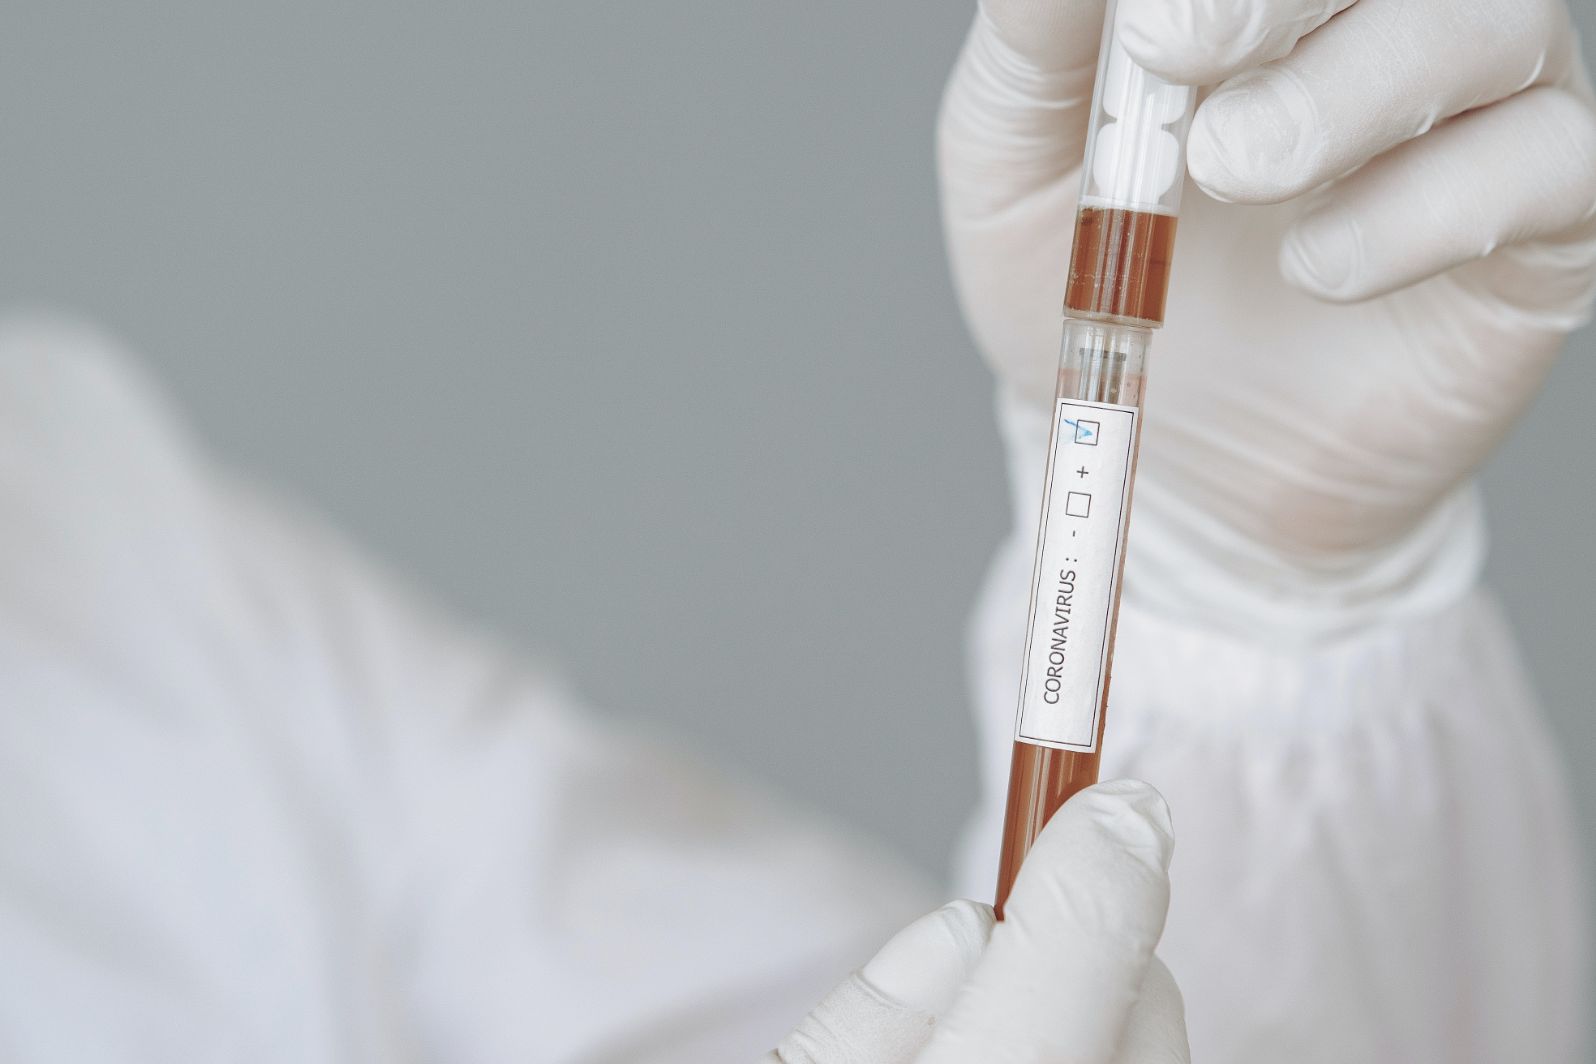 Covid-19: Associações de doentes lançam petição pelo acesso generalizado aos testes rápidos de antigénio